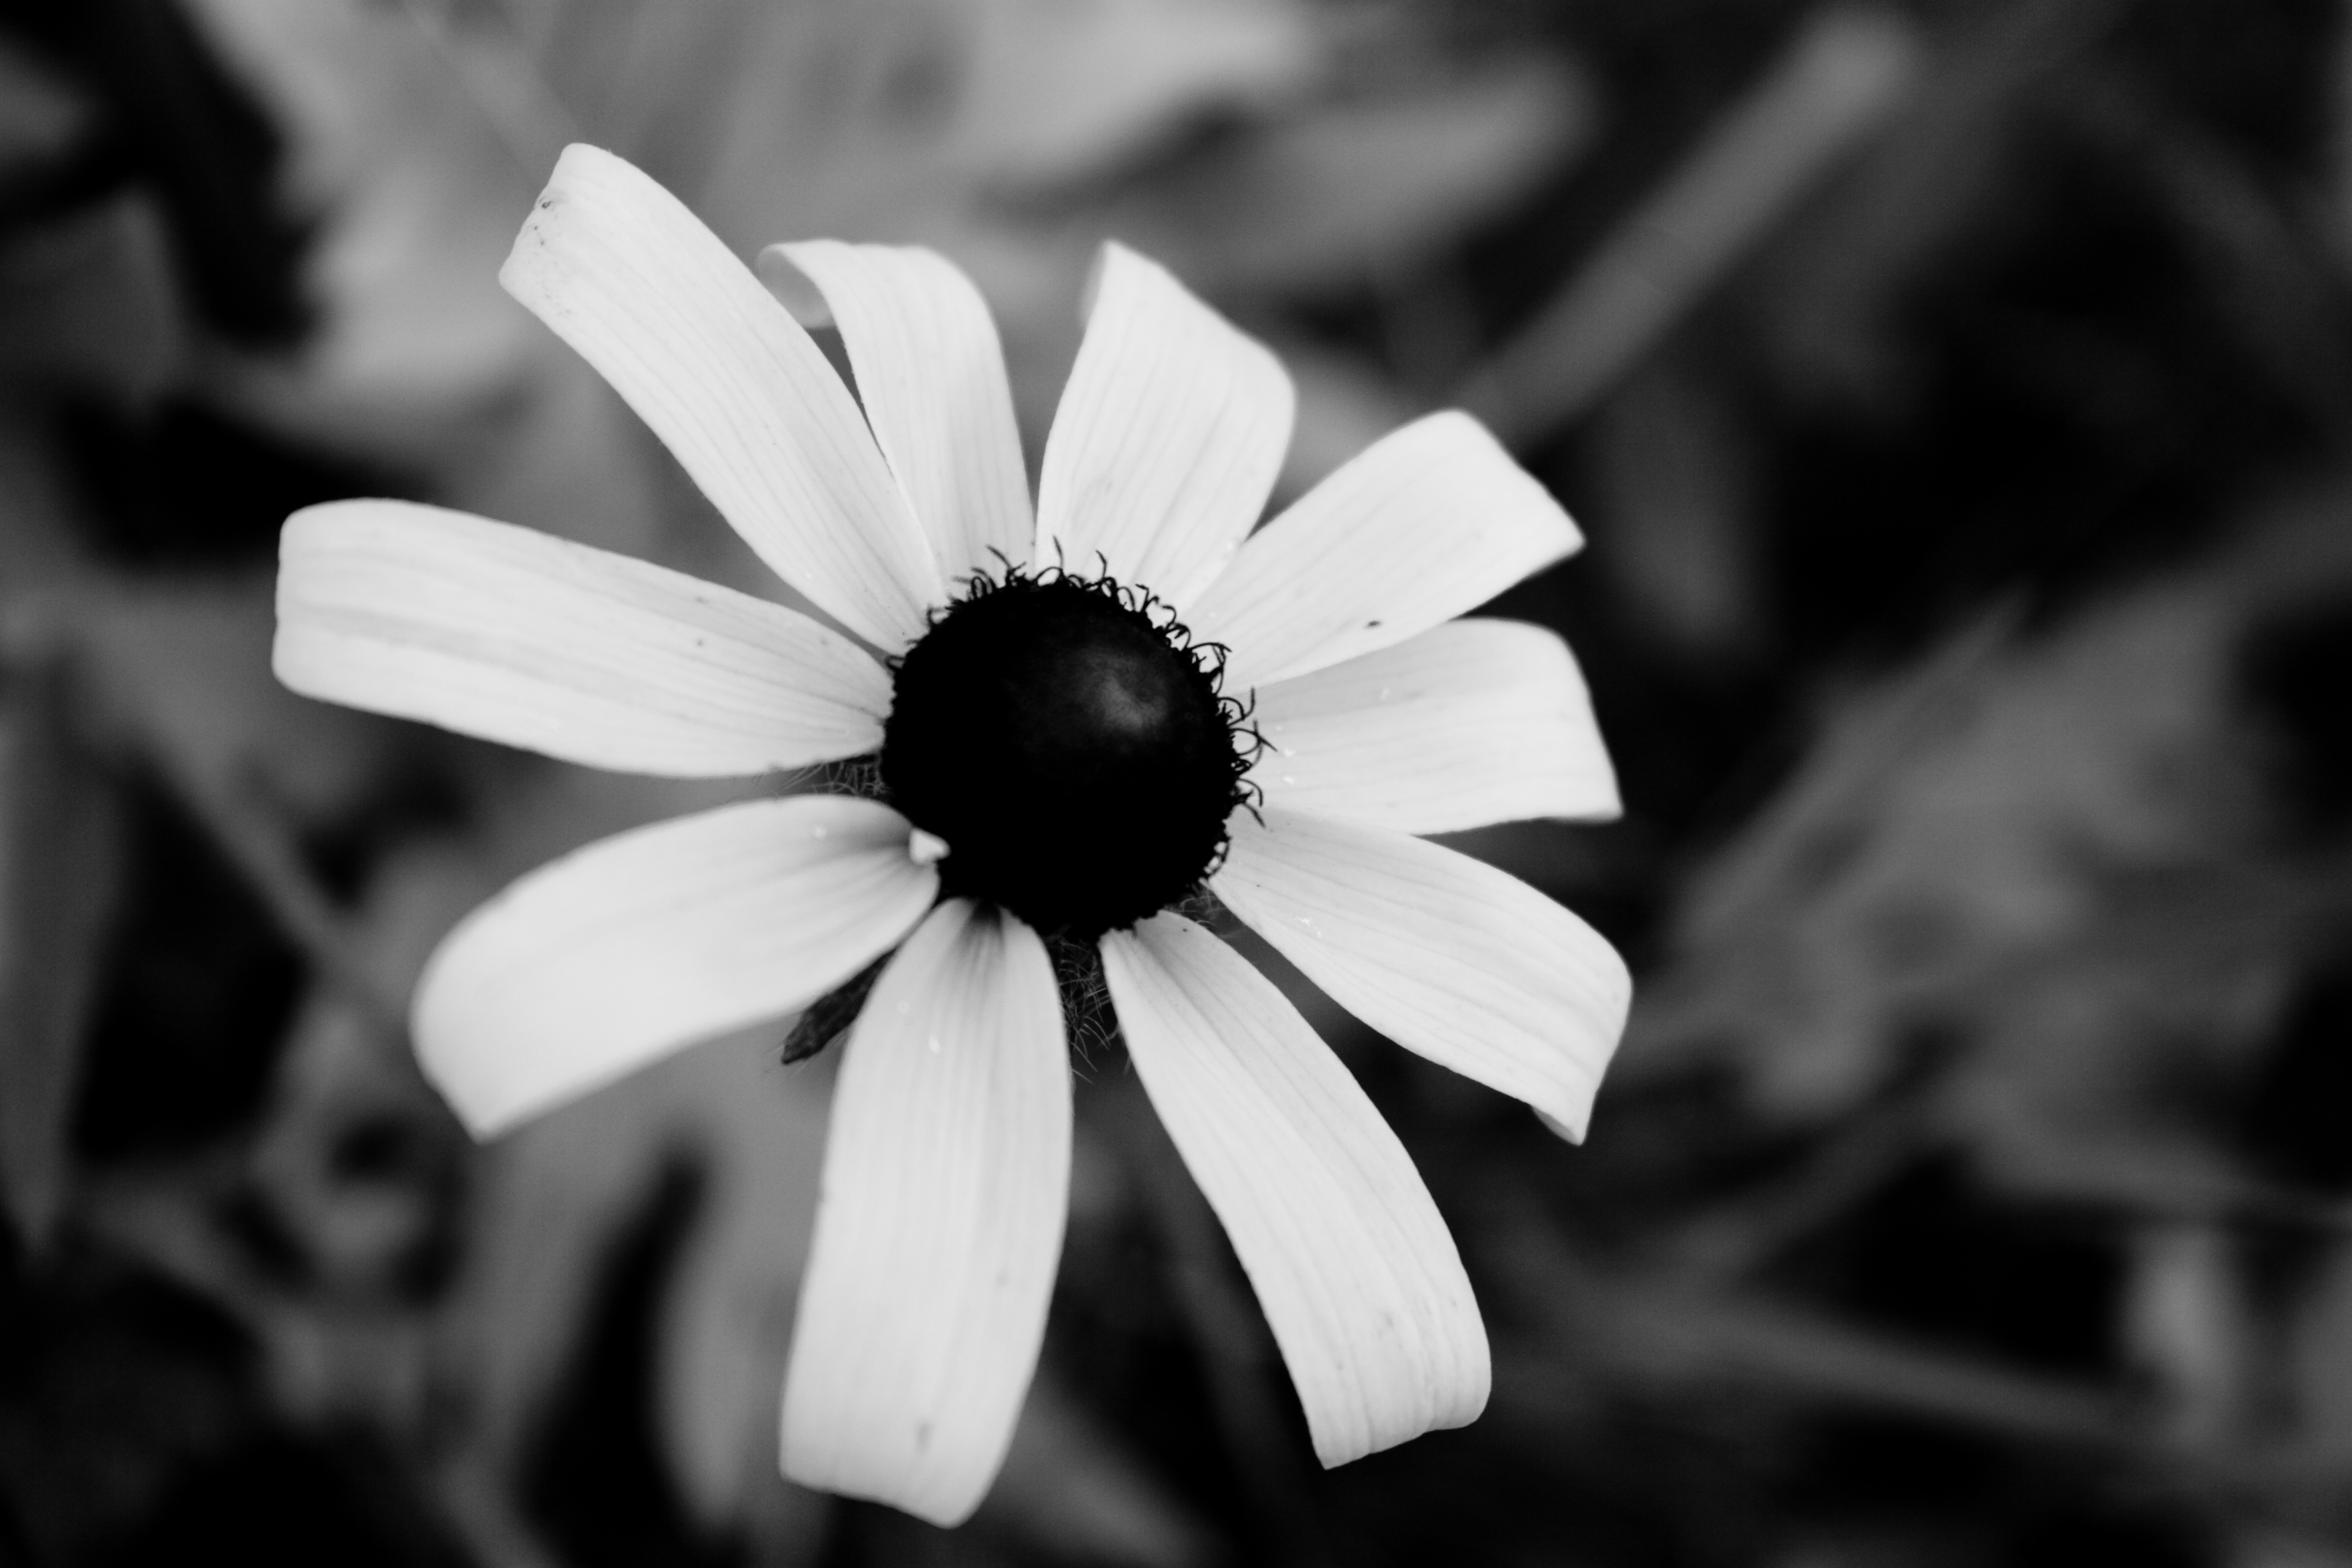 schwarzweiss blumentapete,weiß,monochrome fotografie,schwarz und weiß,blütenblatt,schwarz